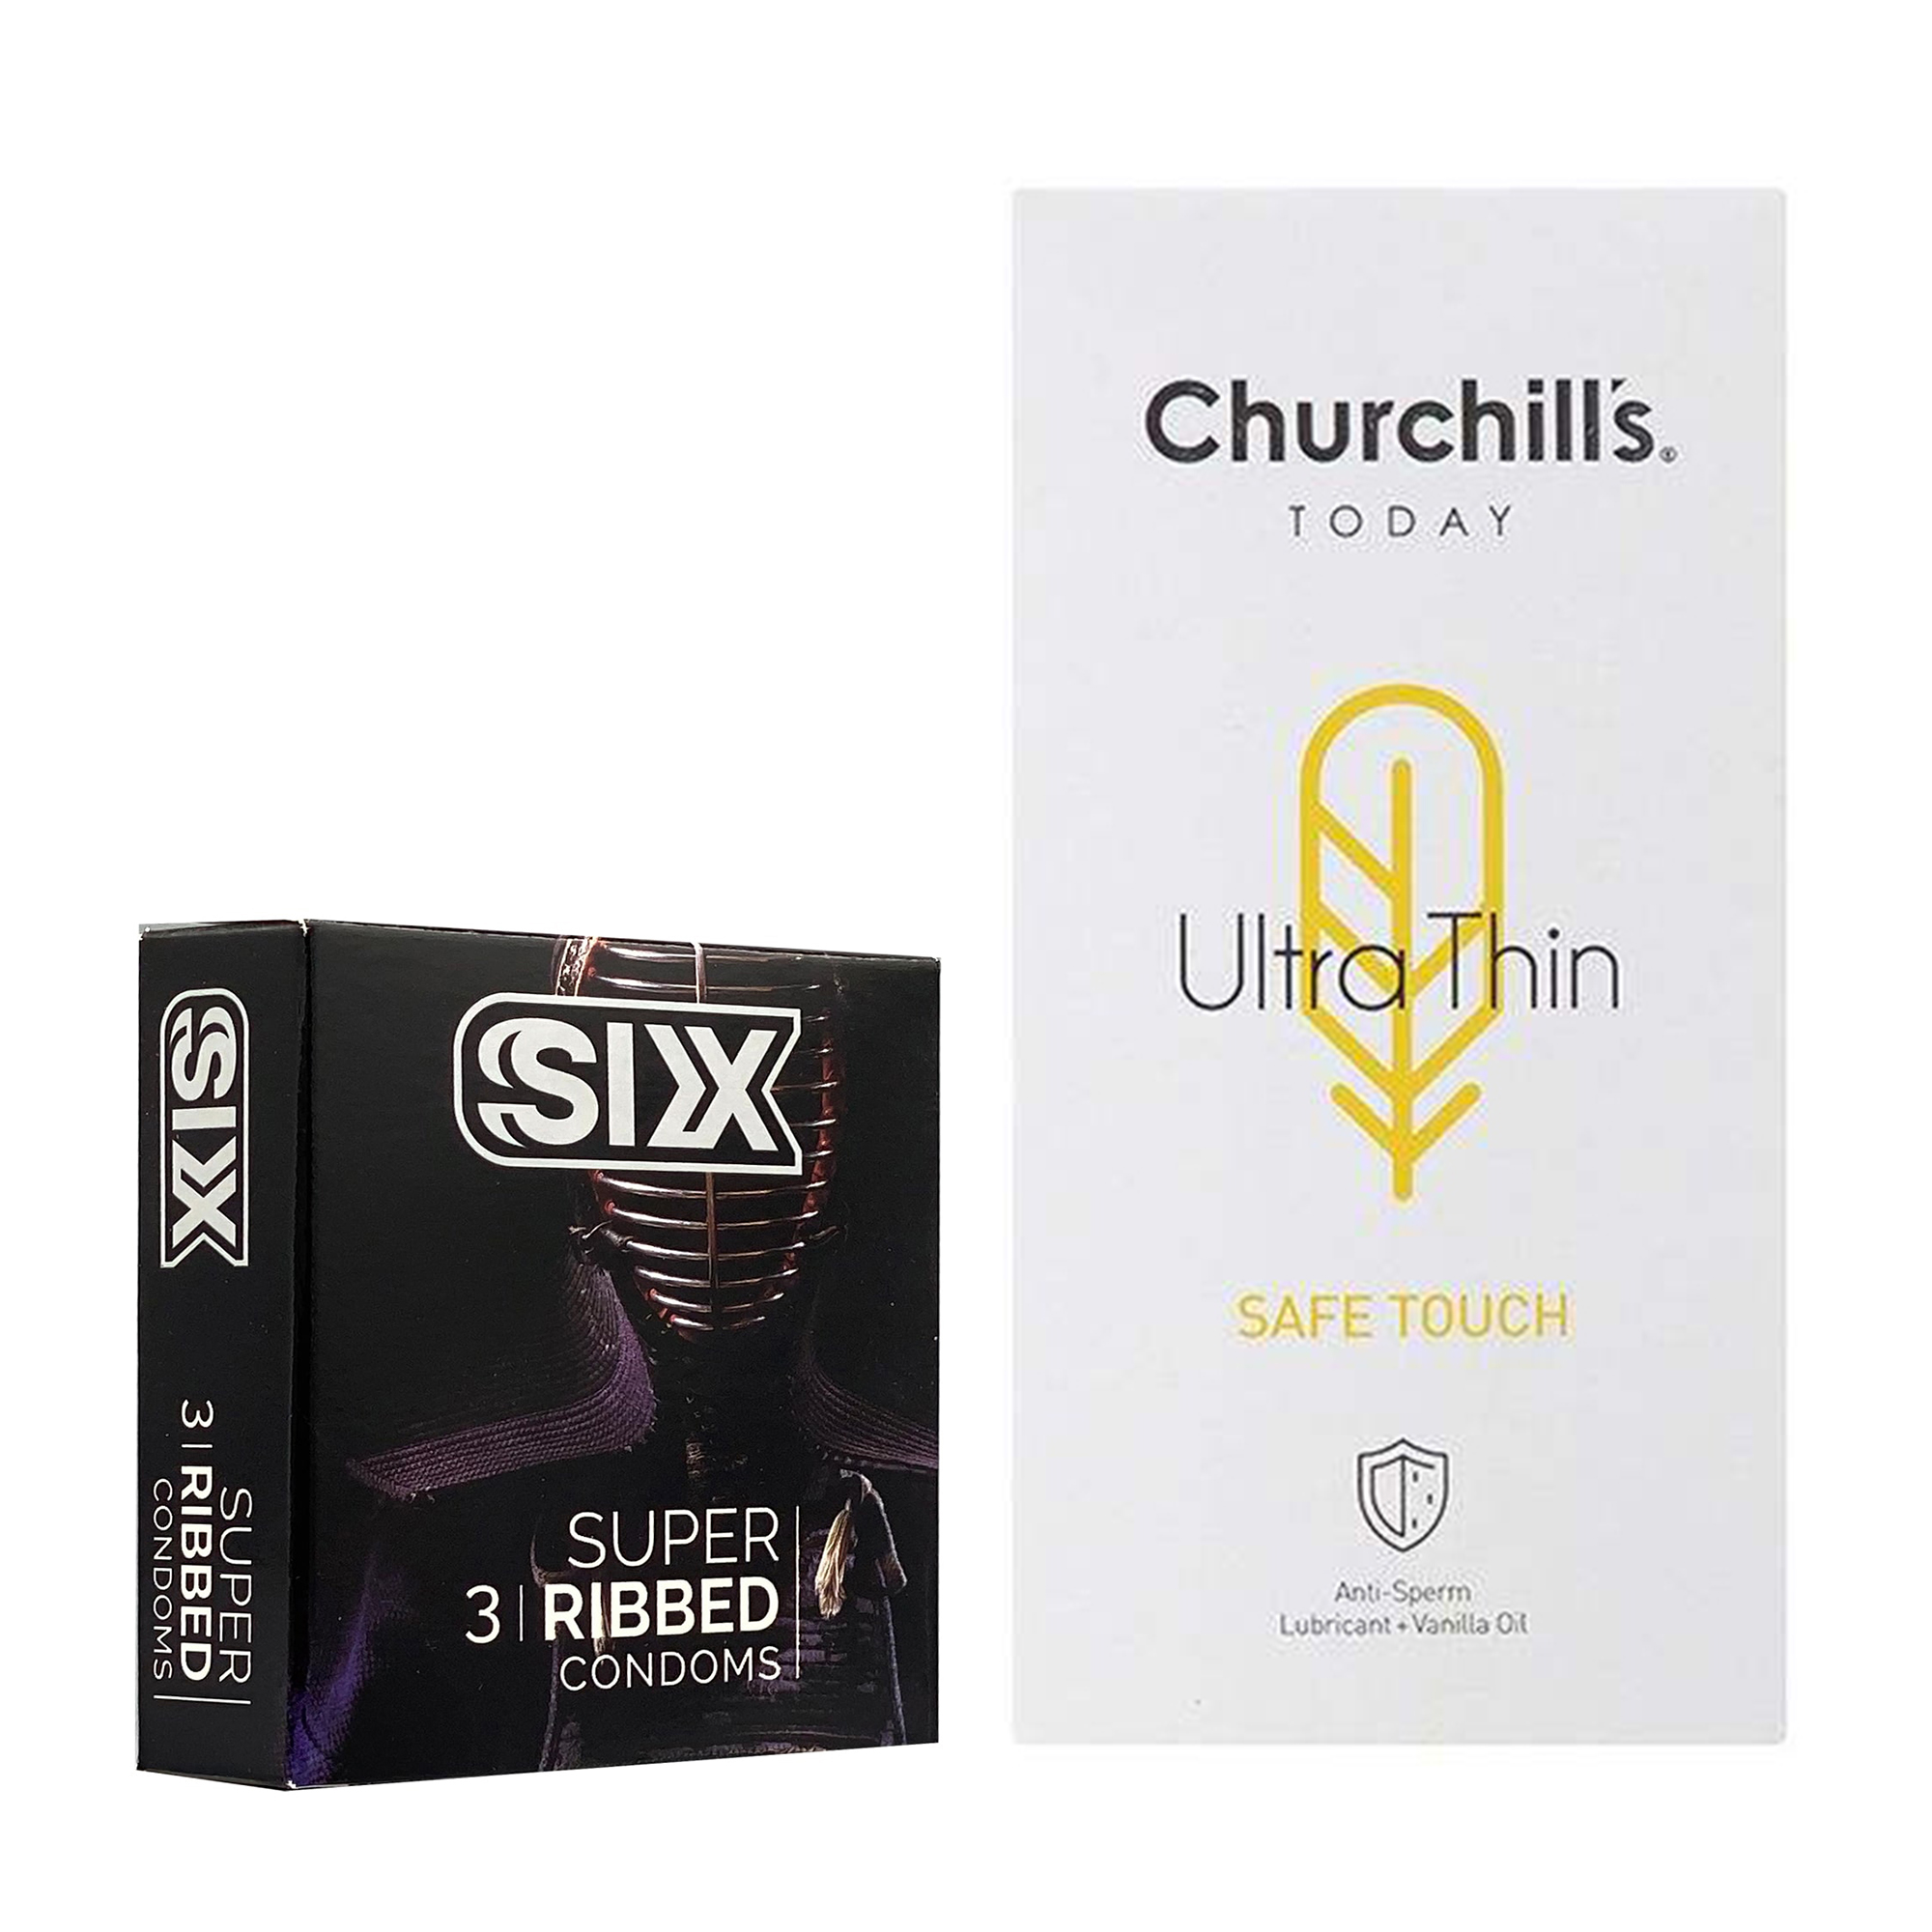 کاندوم چرچیلز مدل Safe Touch بسته 12 عددی به همراه کاندوم سیکس مدل شیاردار بسته 3 عددی 